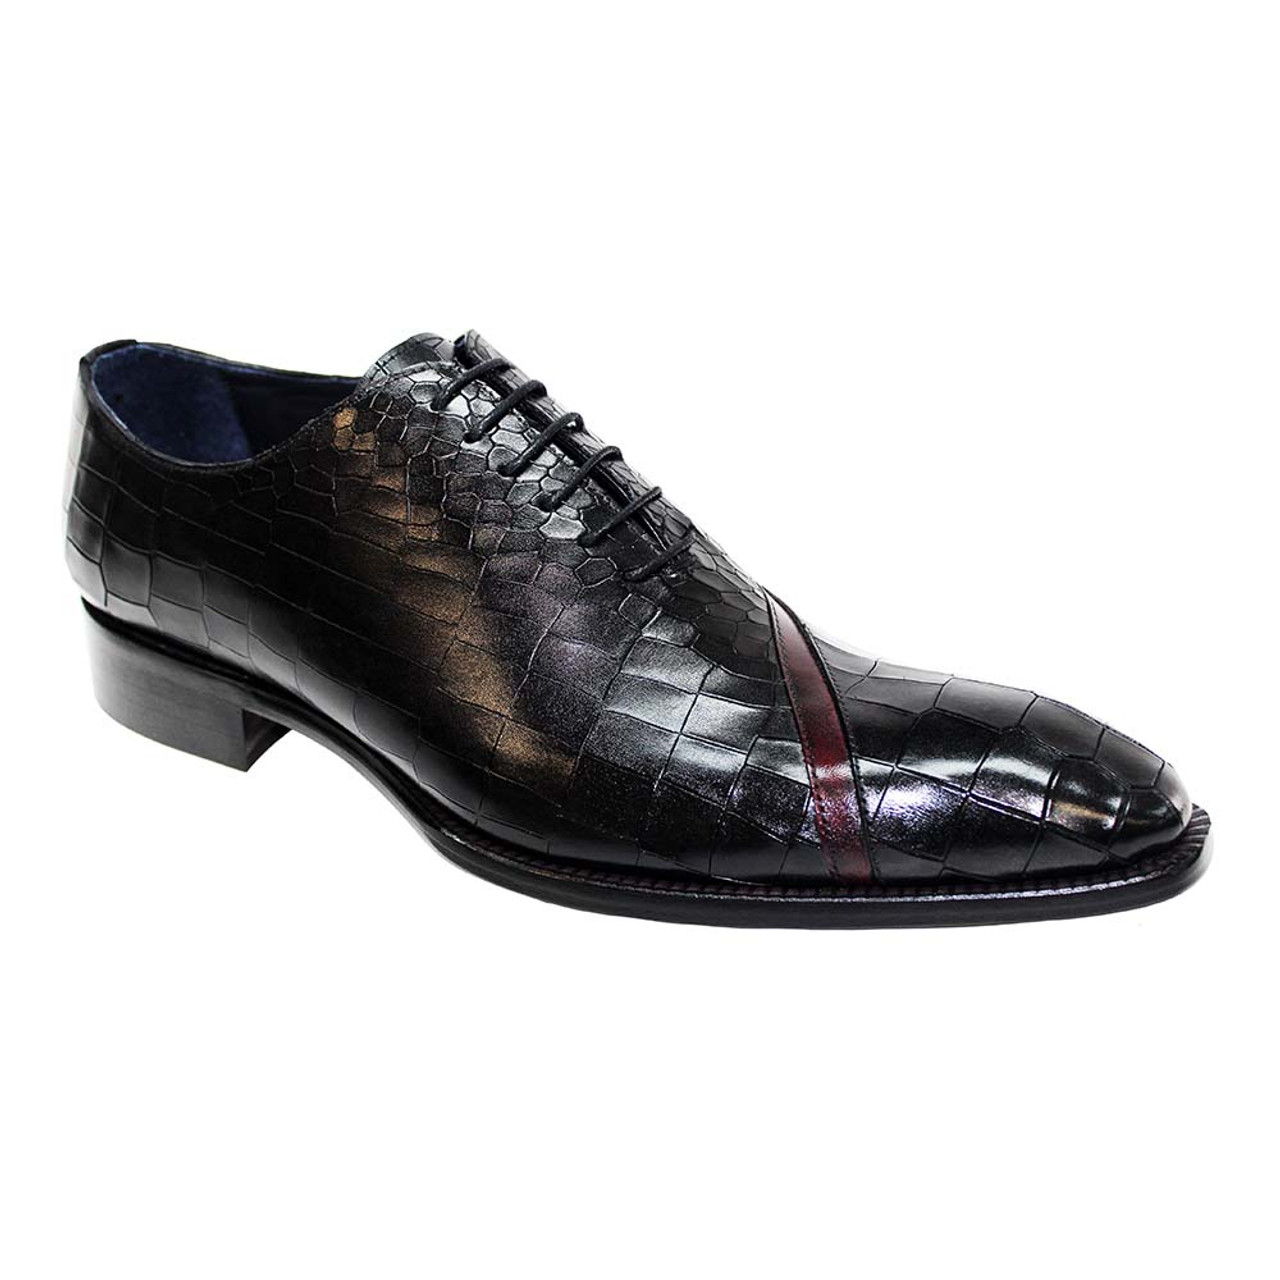 Chaussures de Luxe - Soulier Noir Conception Elégante Pour Homme